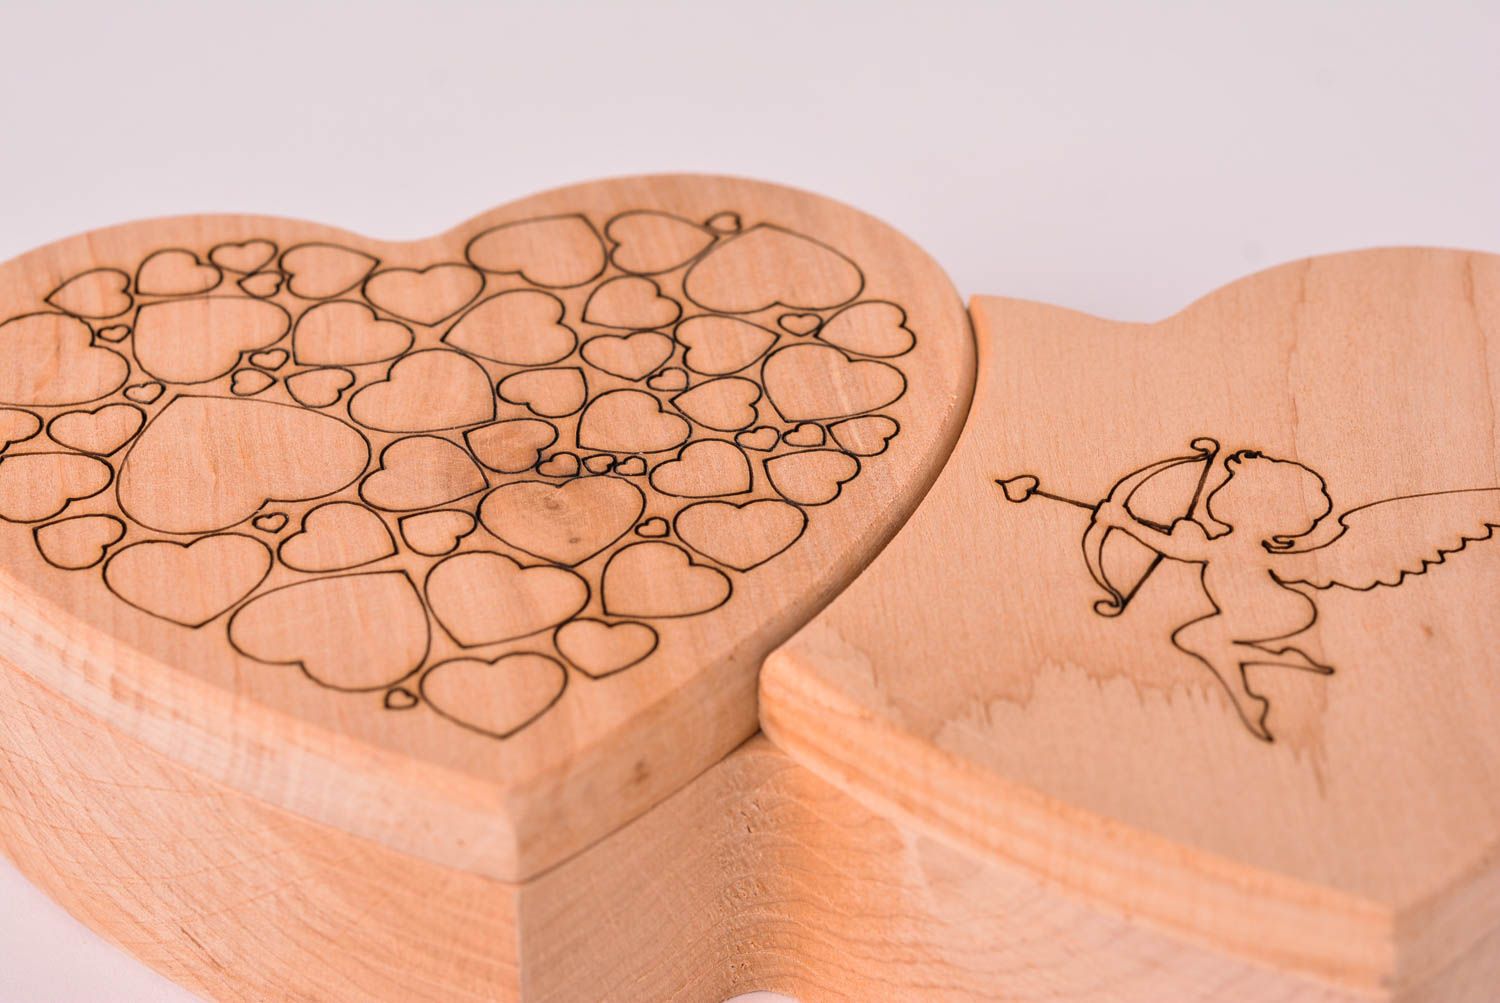 Stylish handmade wooden box wood craft ideas jewelry box design small gifts photo 3